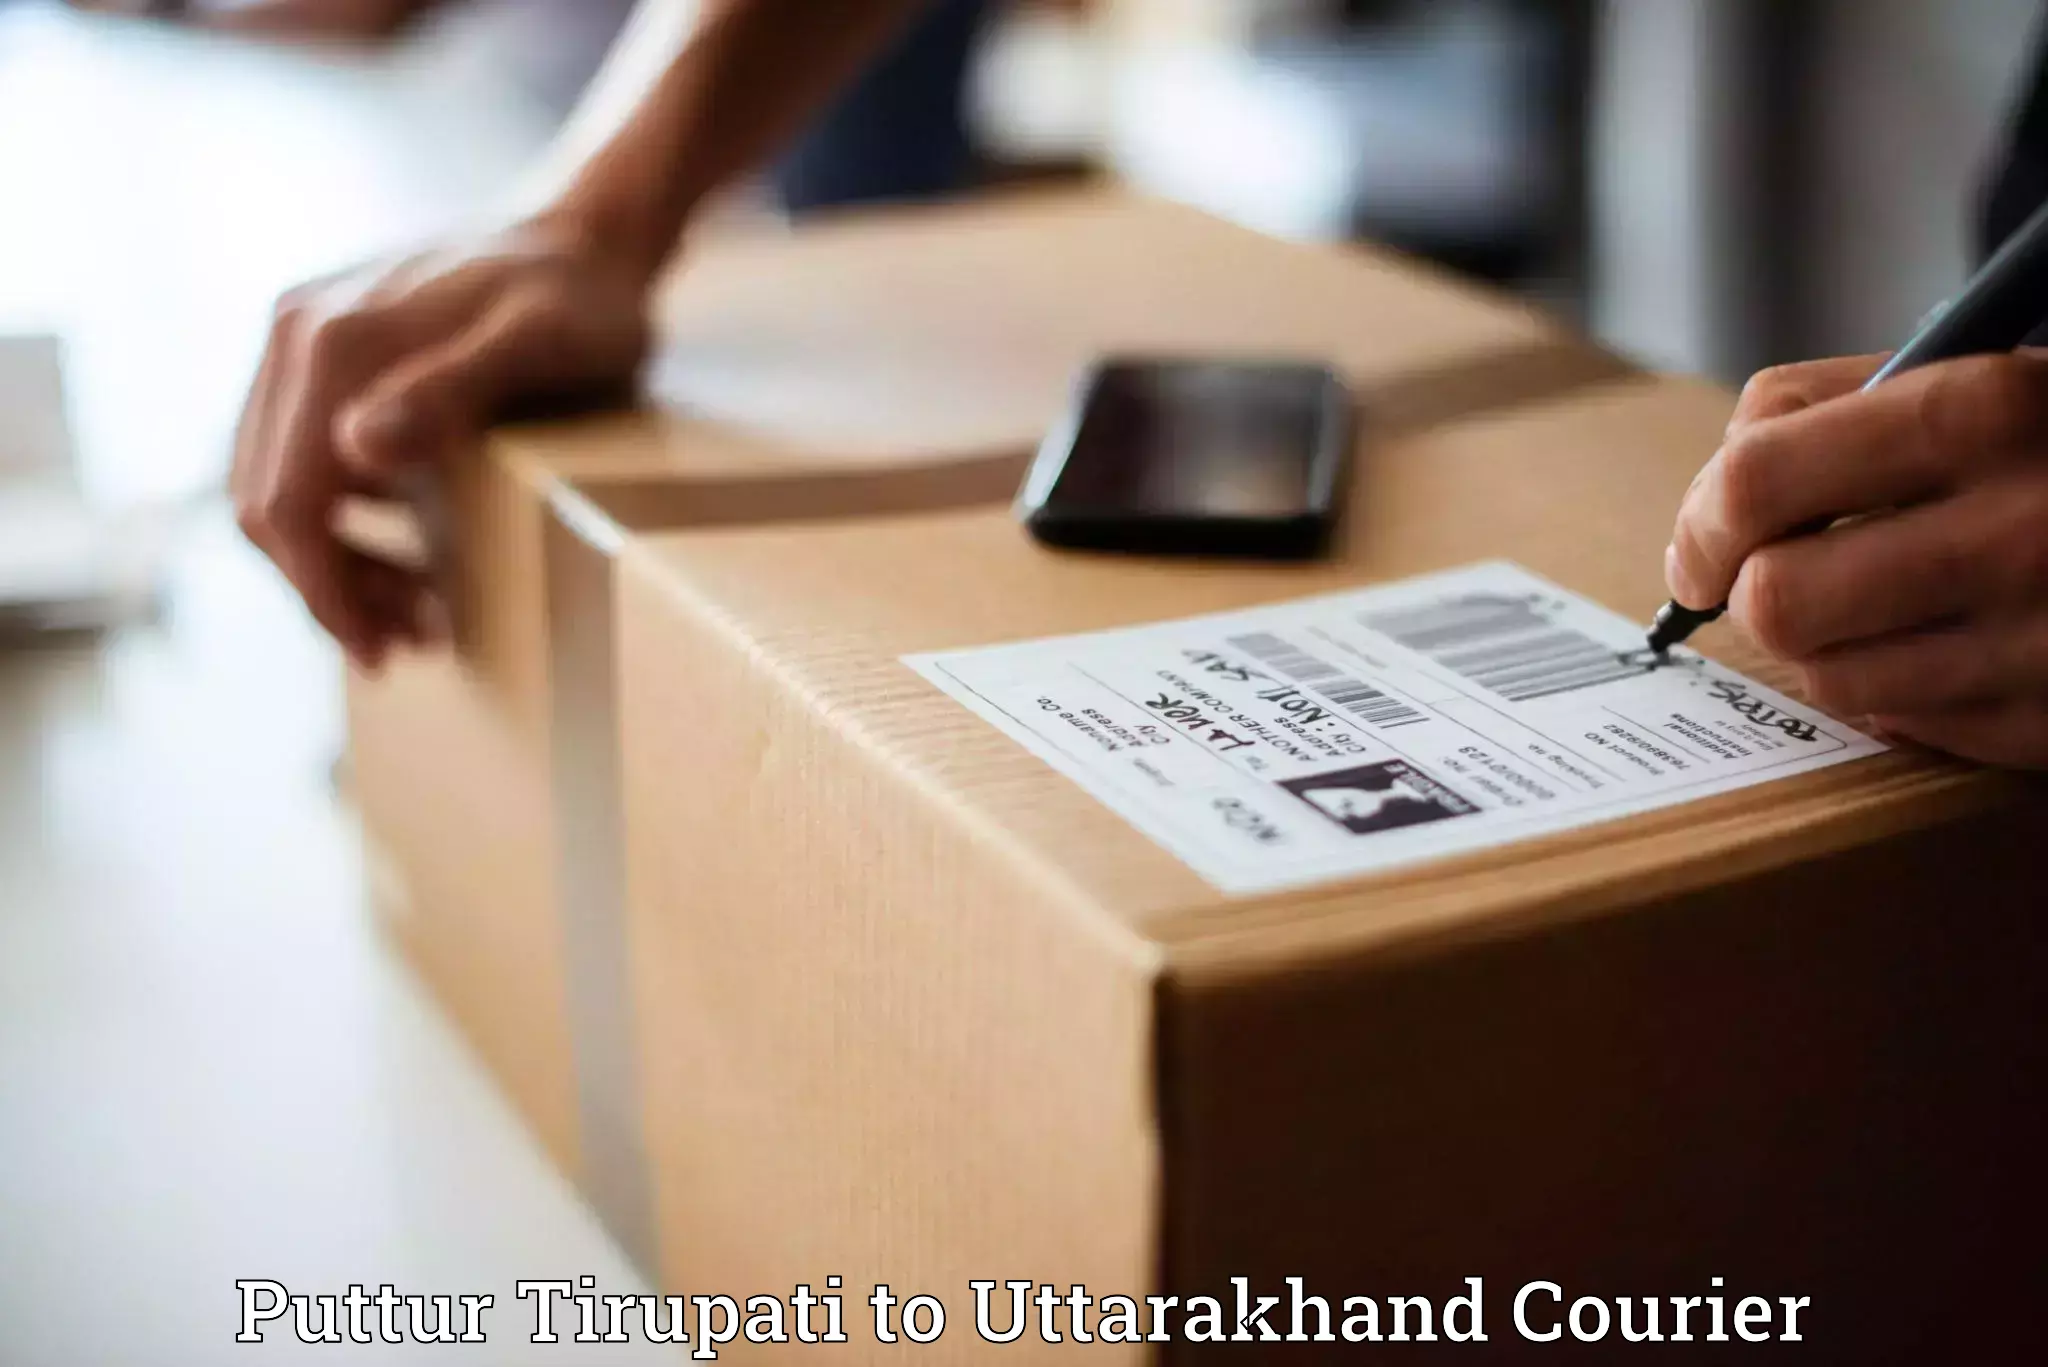 International courier networks Puttur Tirupati to Gairsain